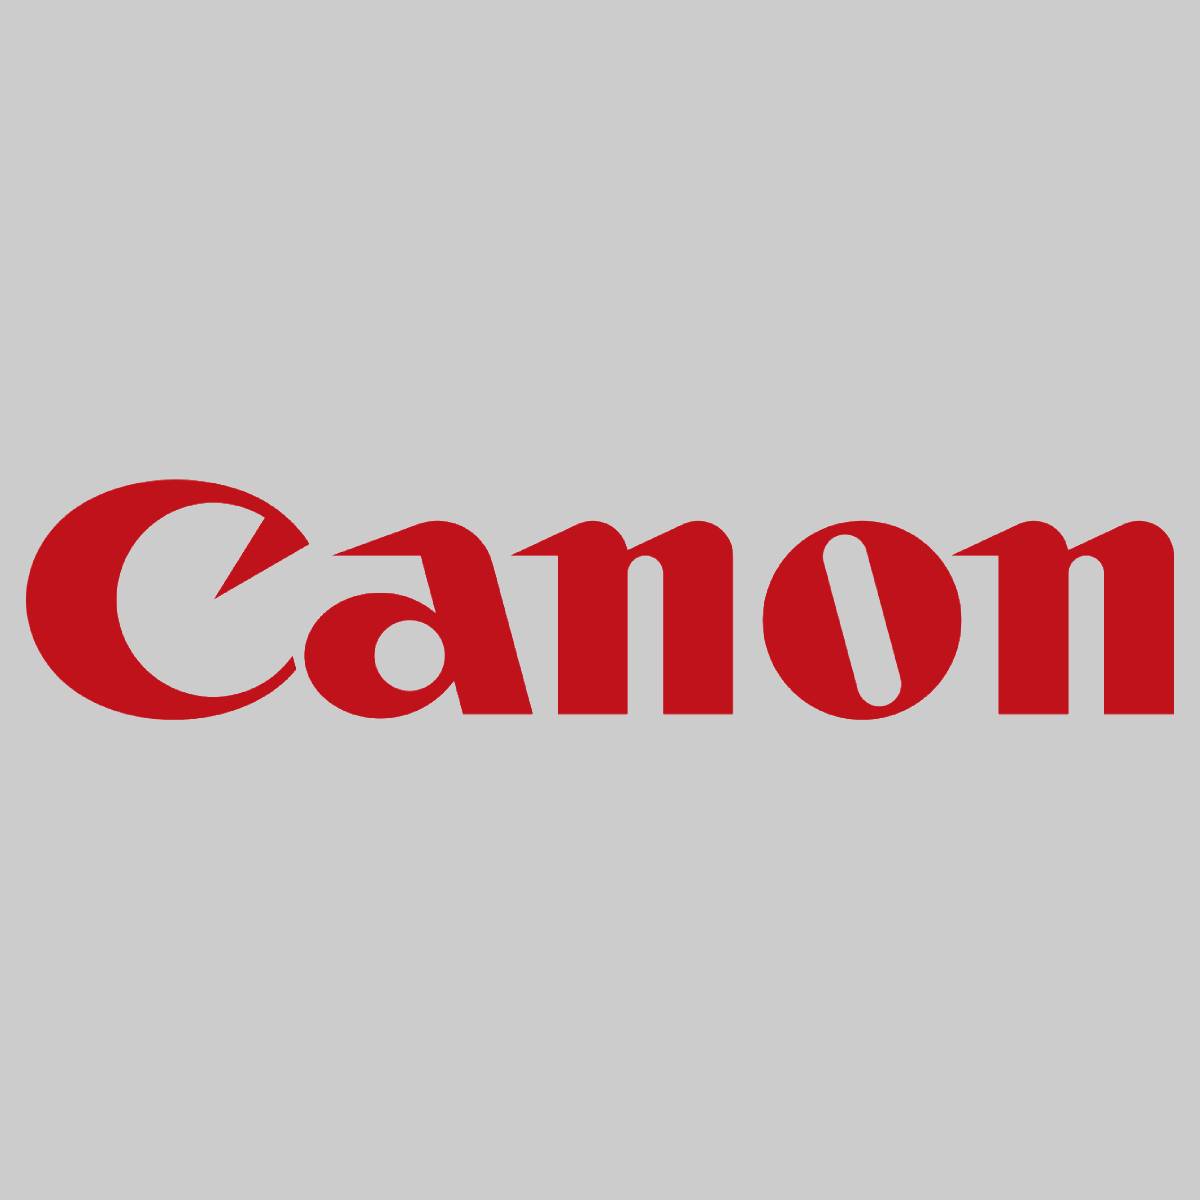 "Original CANON Black Toner Cartridge 040H 0461C001 für LBP710C Series NEU OVP